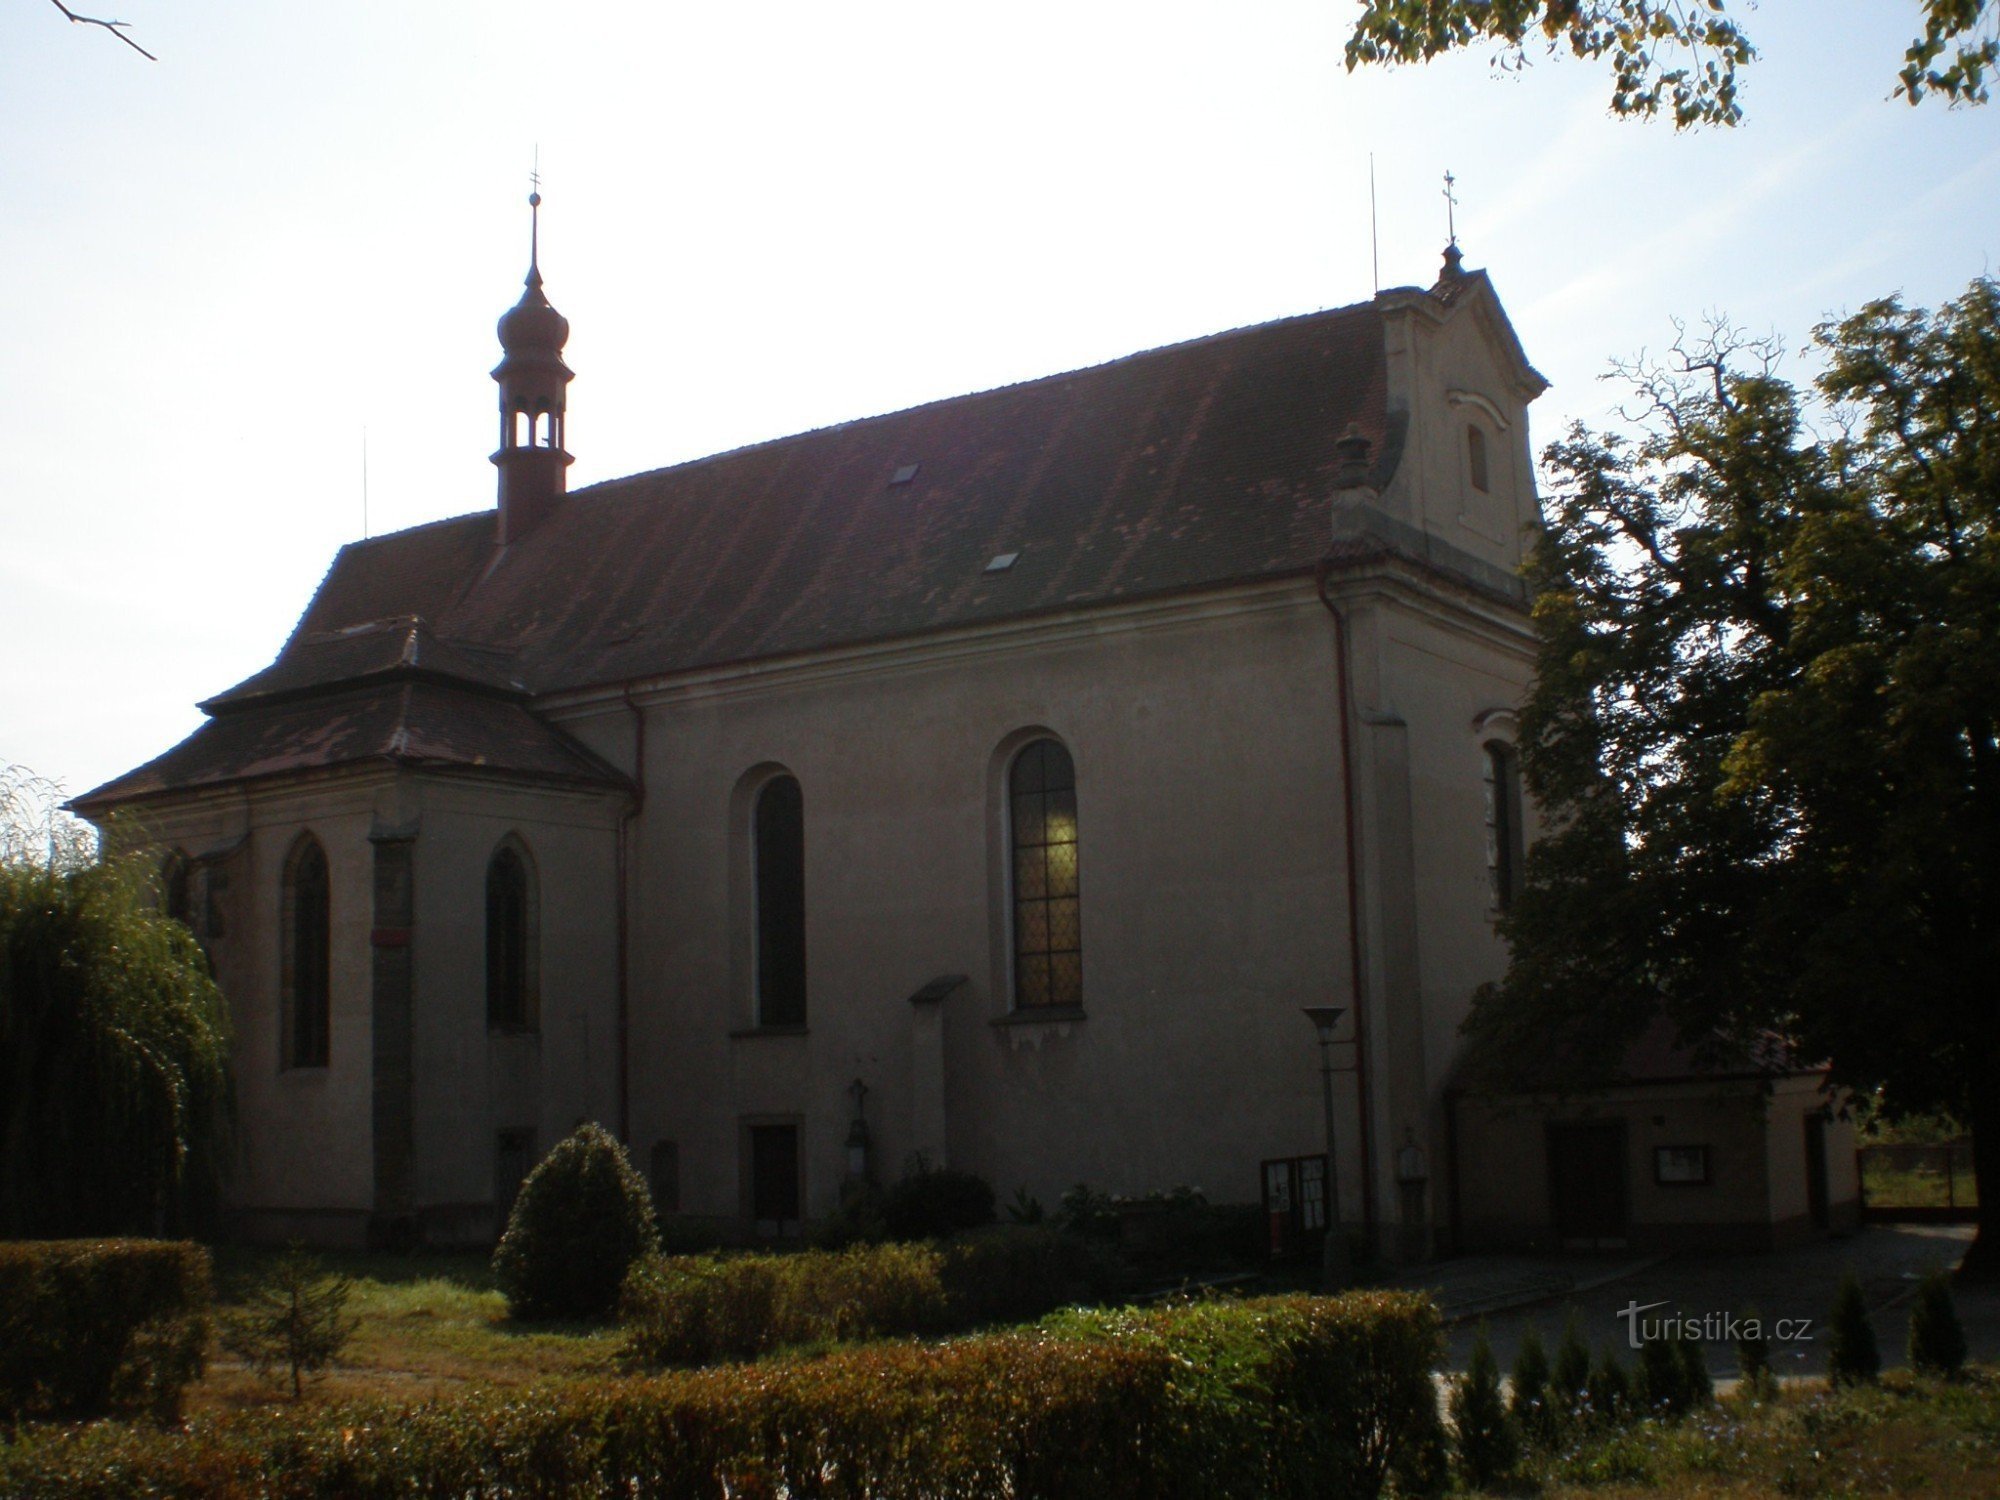 Sezemice - Kerk van St. drie-eenheid